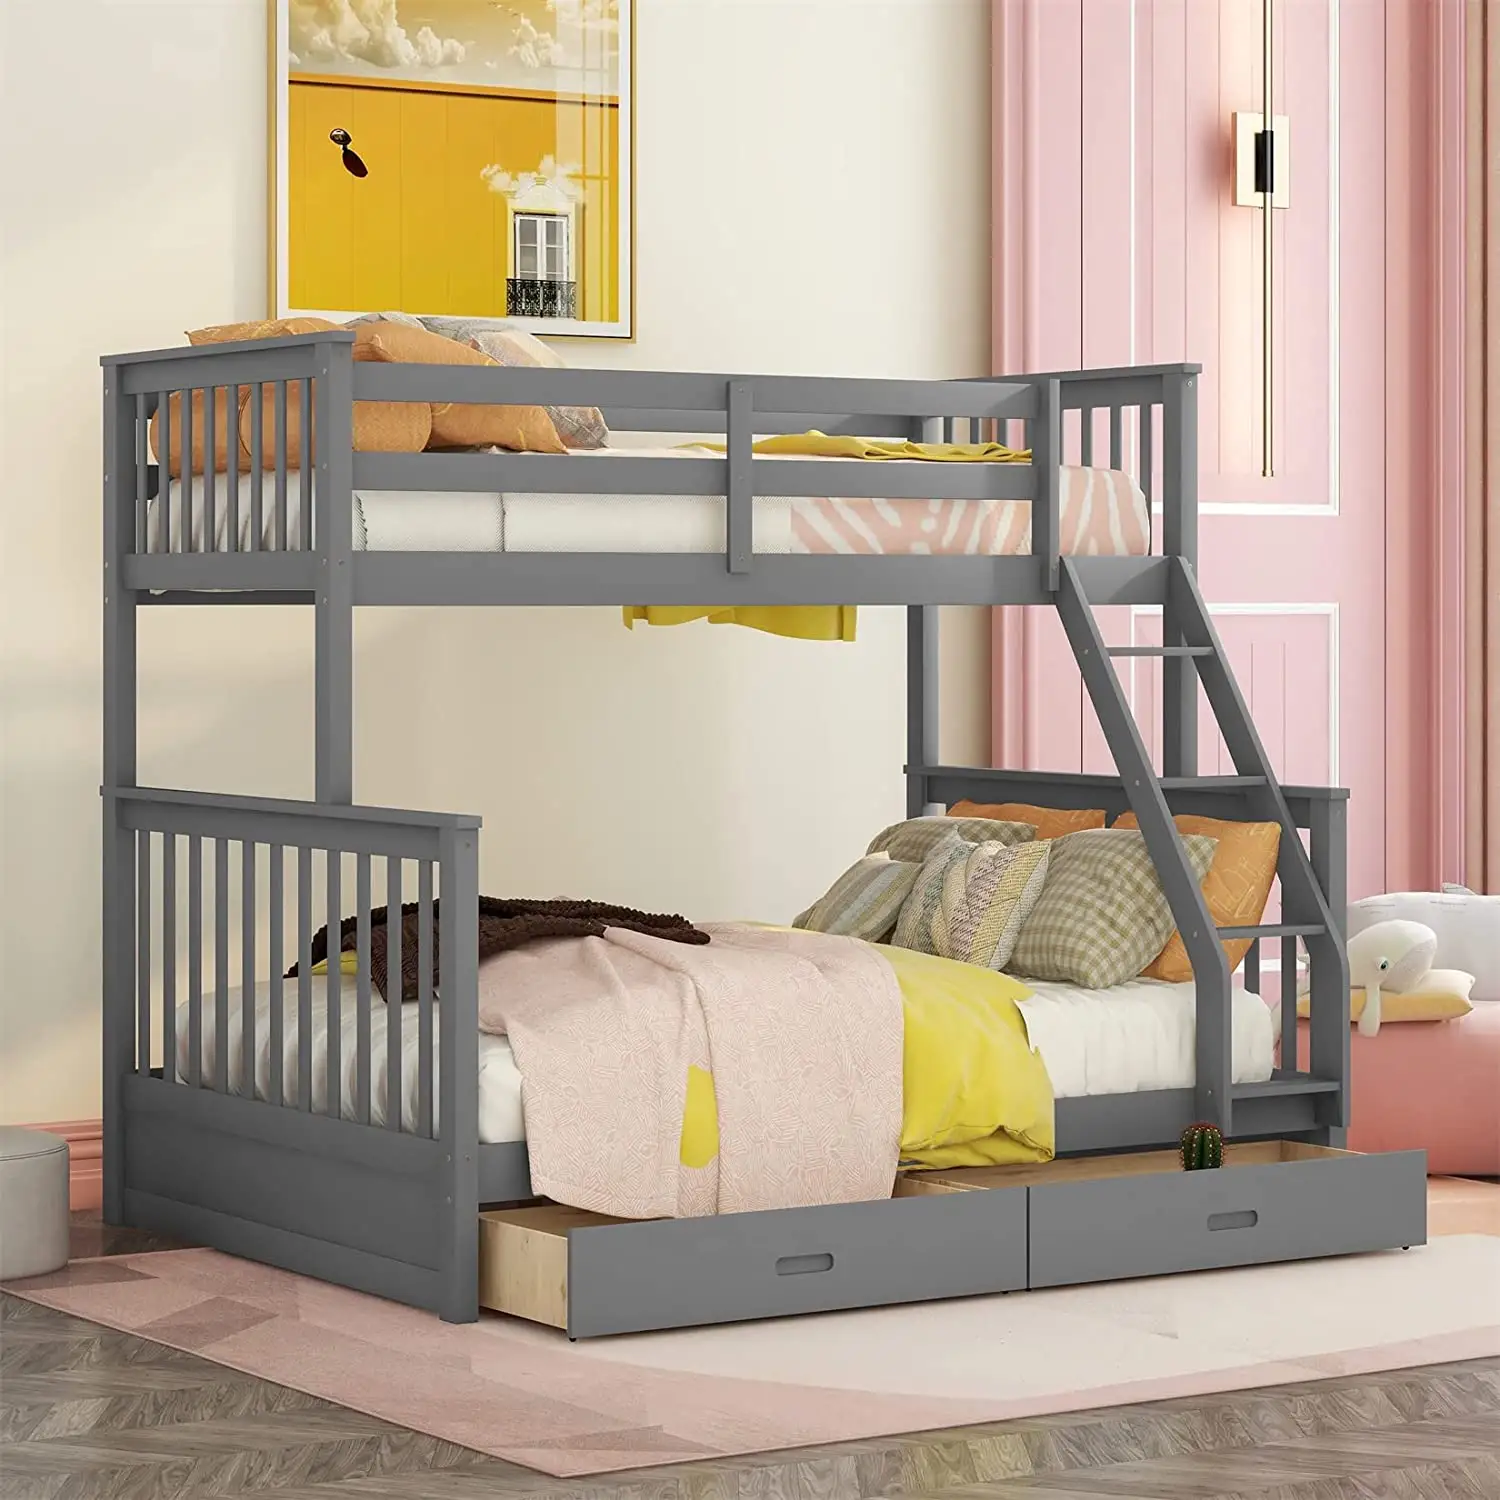 Estructura de cama de madera de pino, litera doble sobre cama completa con cajones de almacenamiento y escaleras, camas para niños para dormitorio